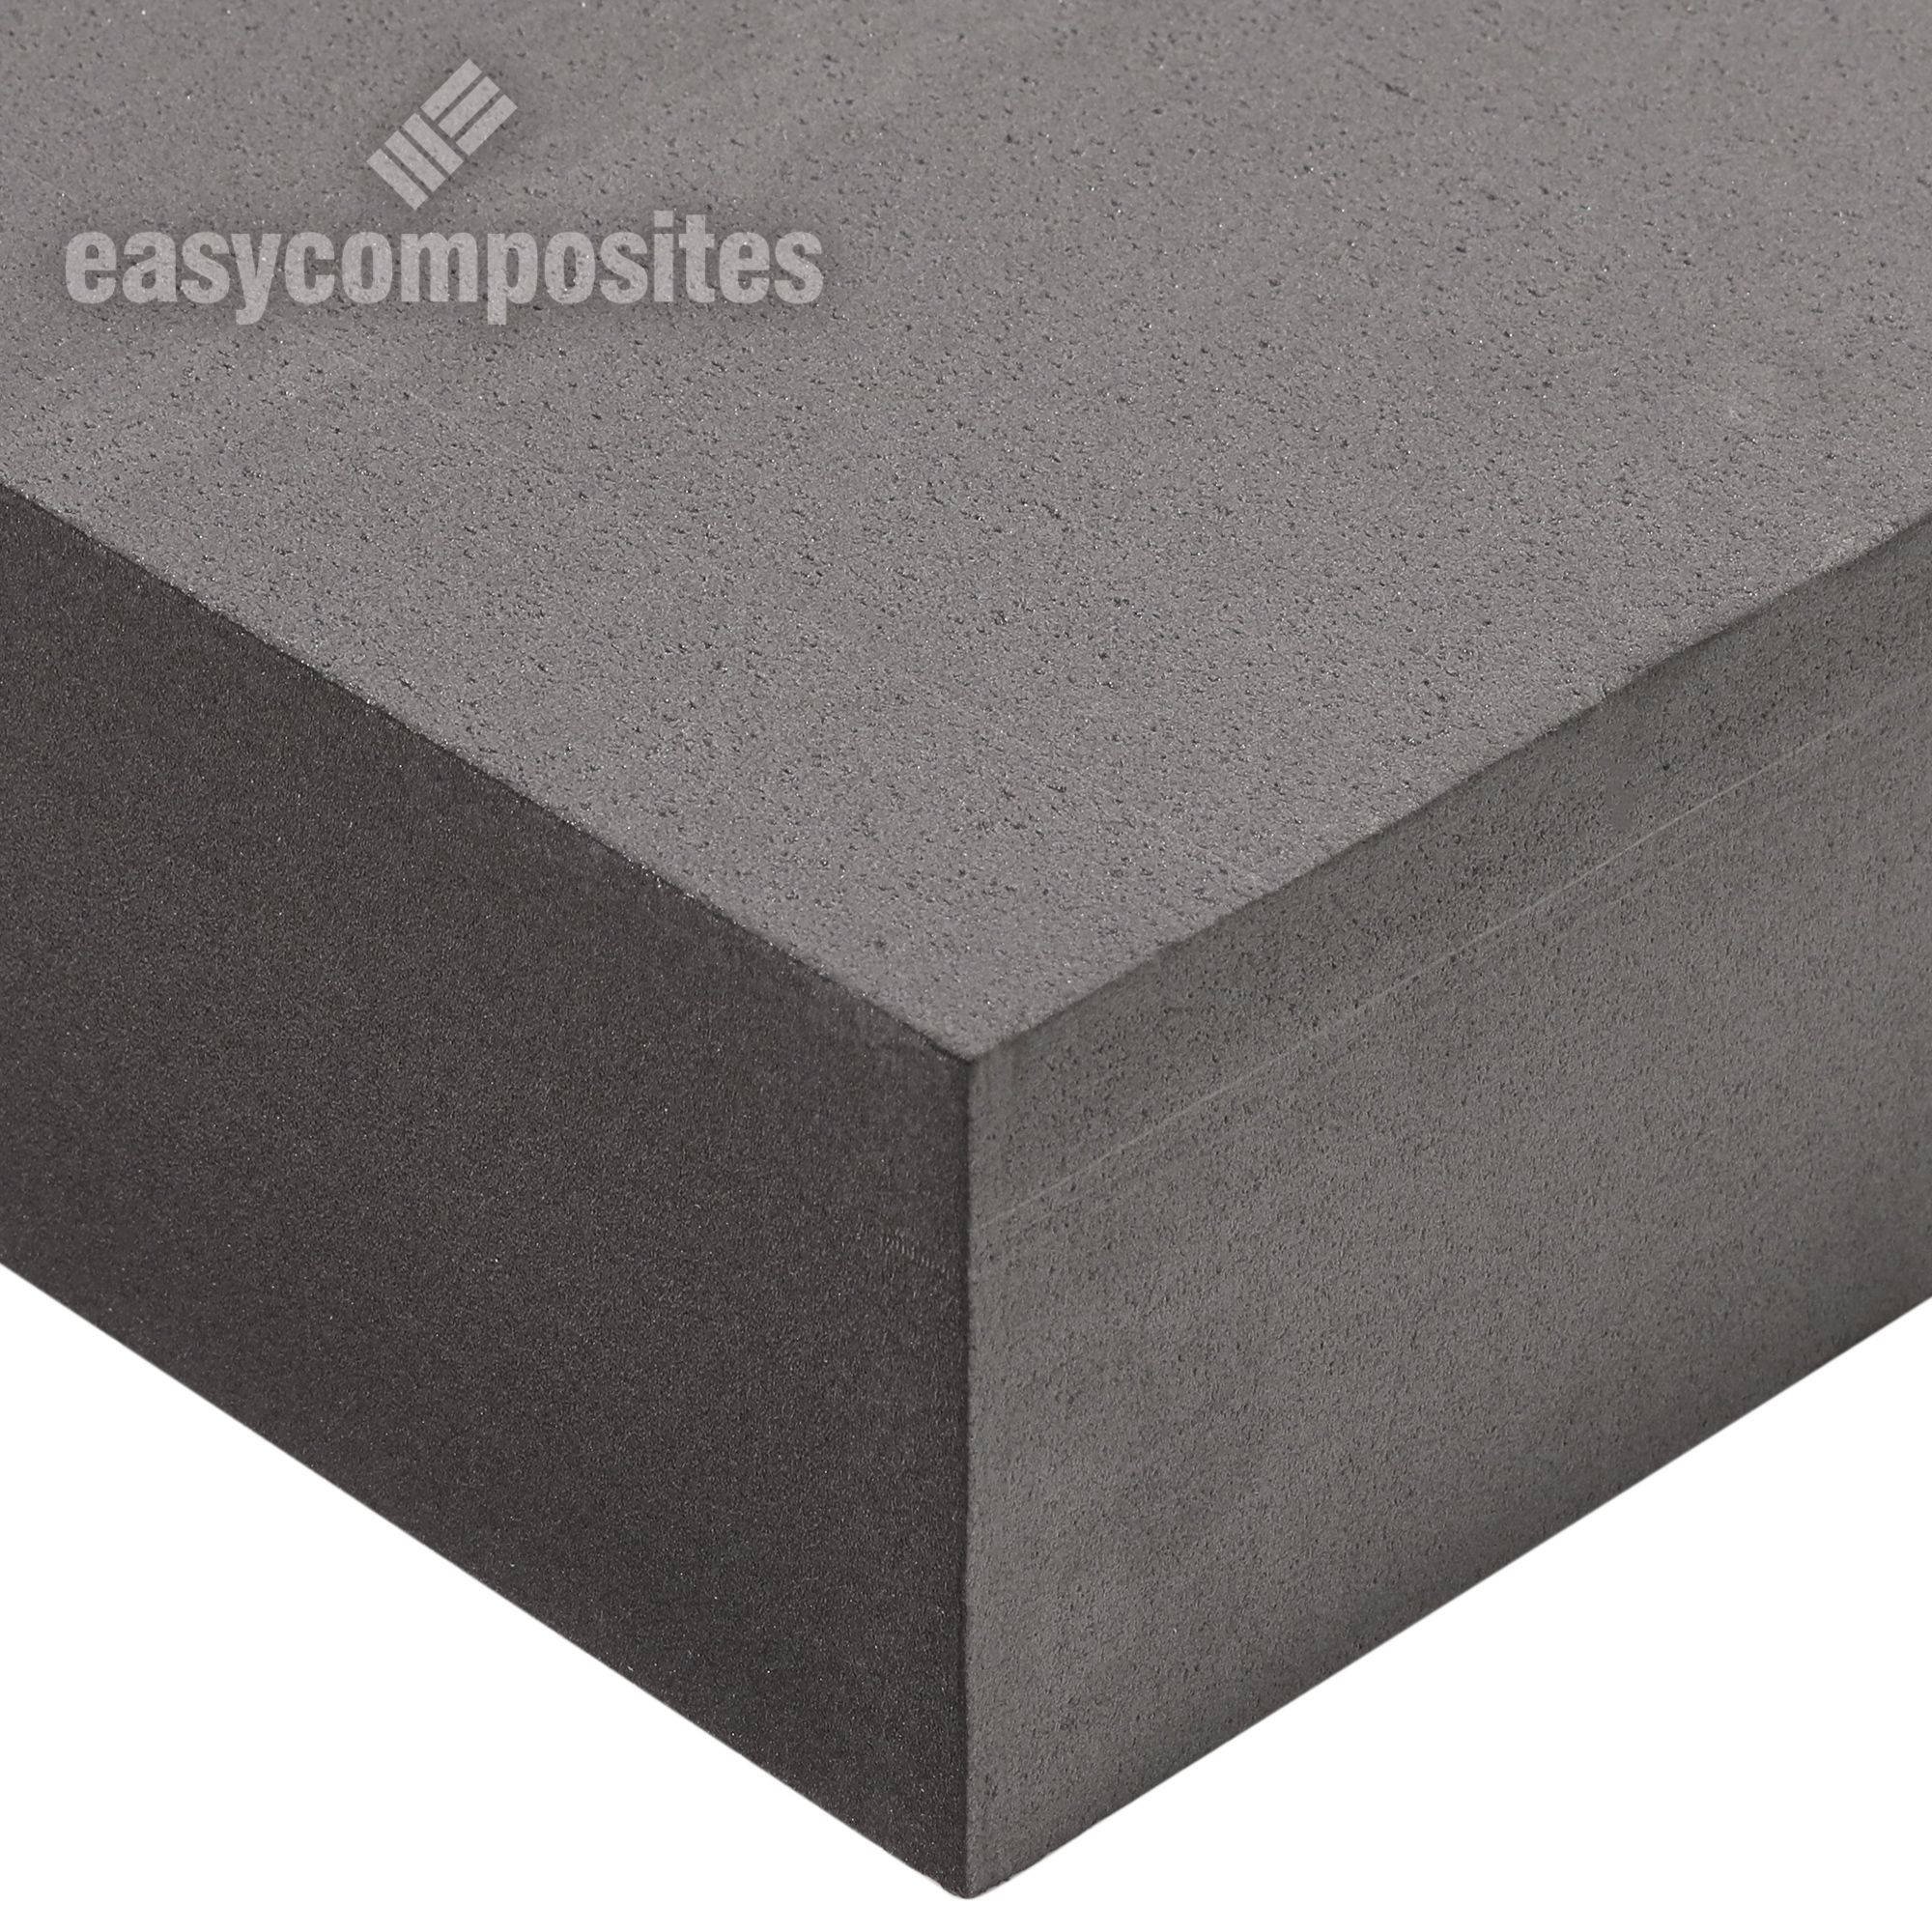 Core Materials, Polyurethane Foam Core